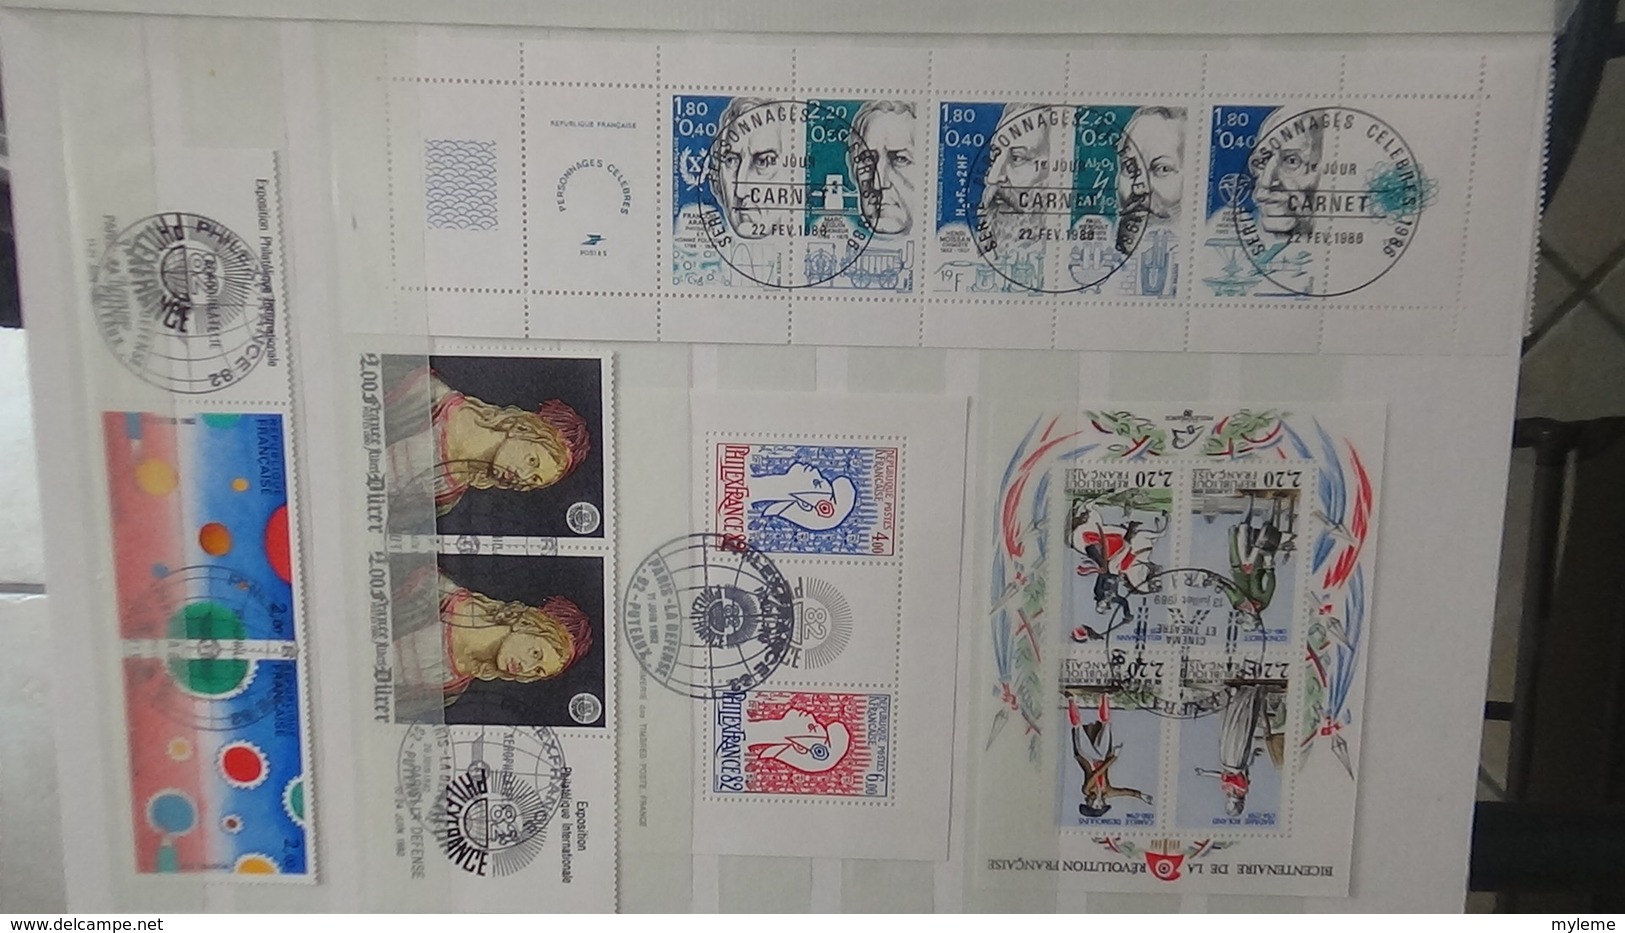 Collection France oblitéré timbres, blocs, documents tous belle oblitération 1er jour